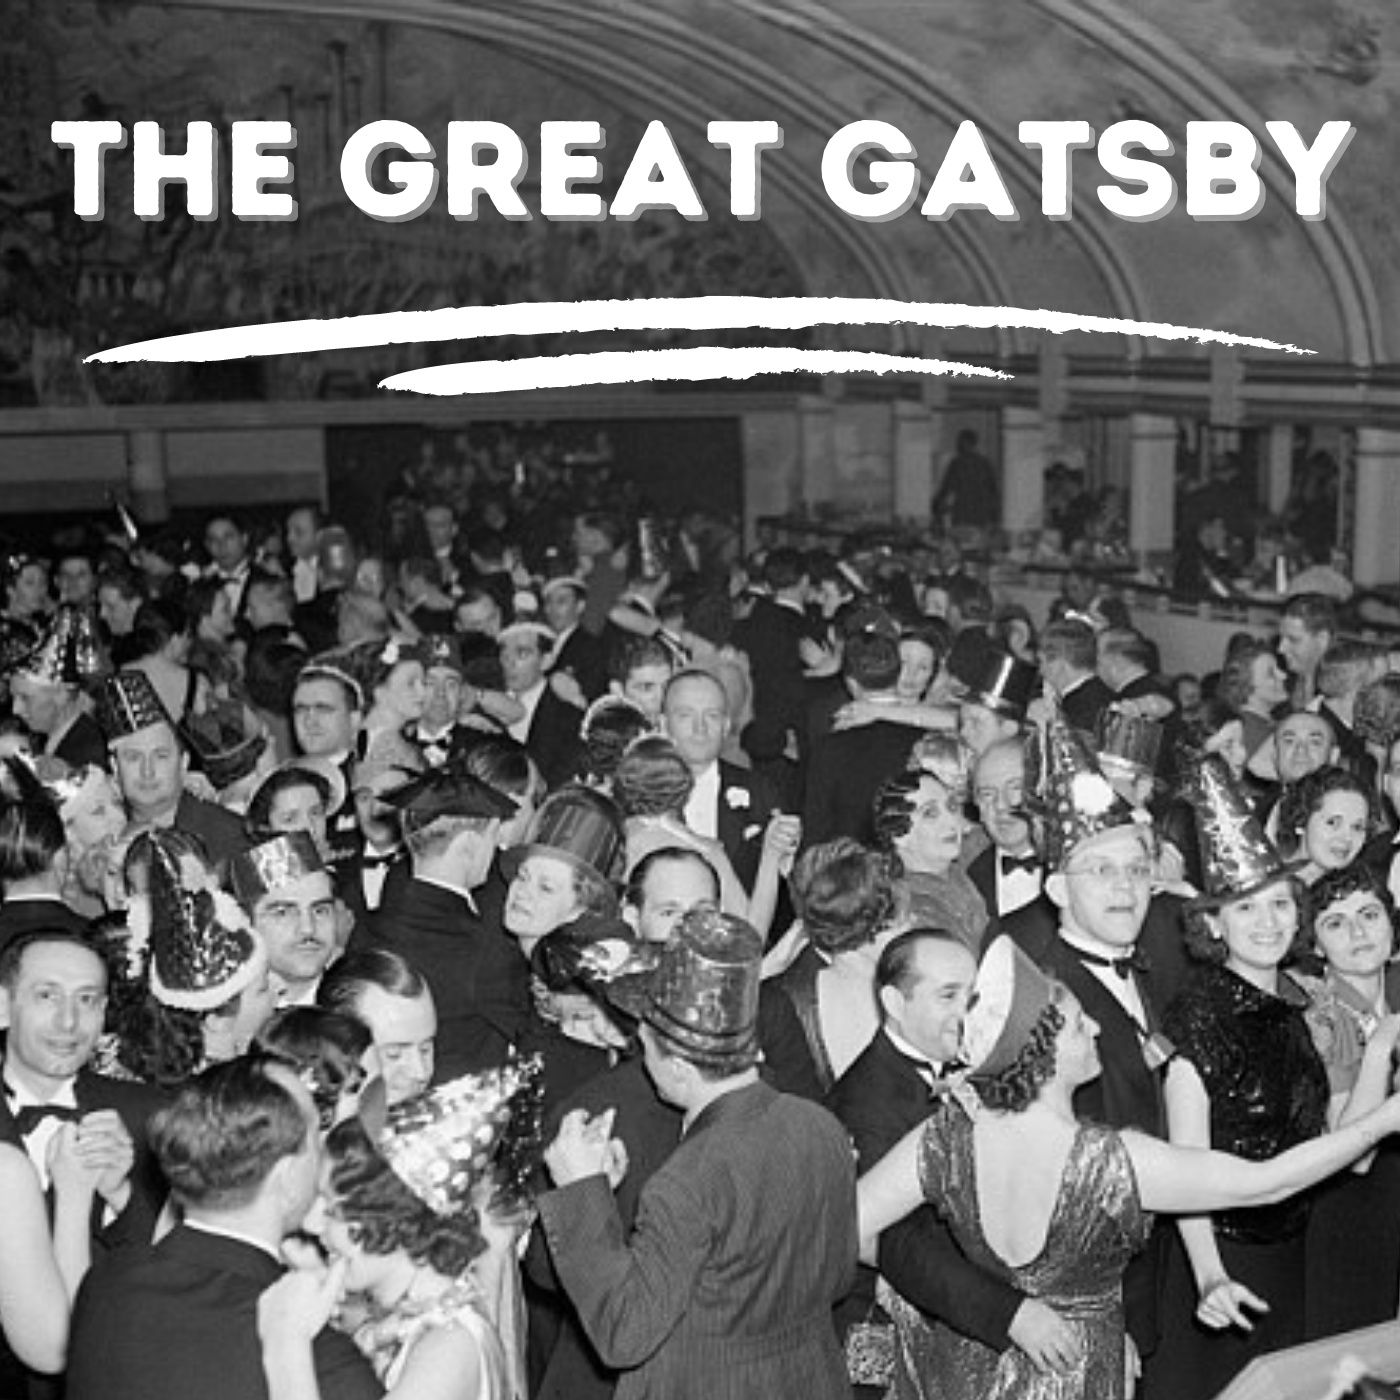 The Great Gatsby – F. Scott Fitzgerald